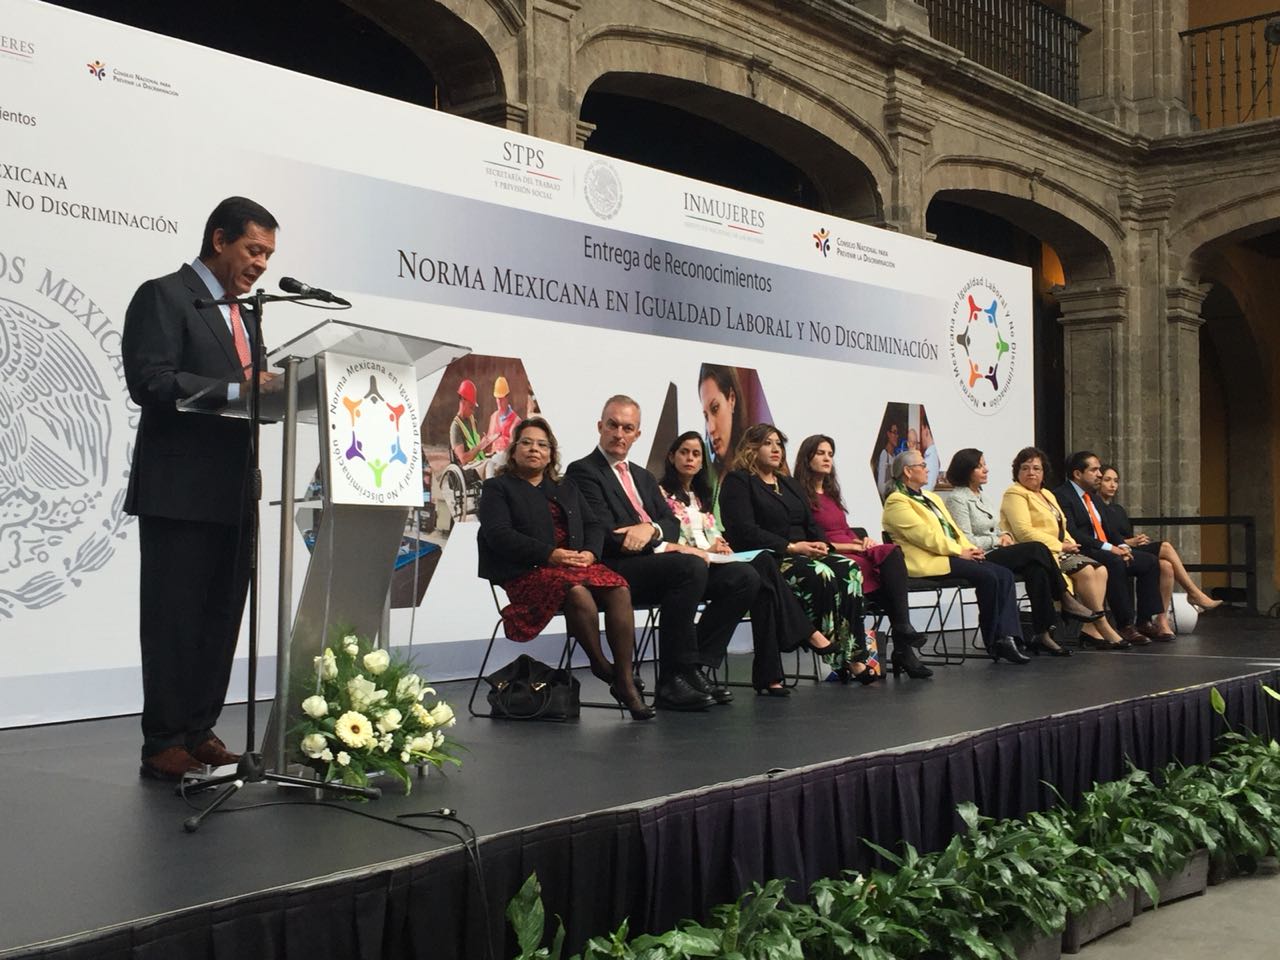 El Titular de la STPS, Roberto Campa hablando a las personas galardonadas en la Norma Mexicana en Igualdad Laboral y No Discriminación.